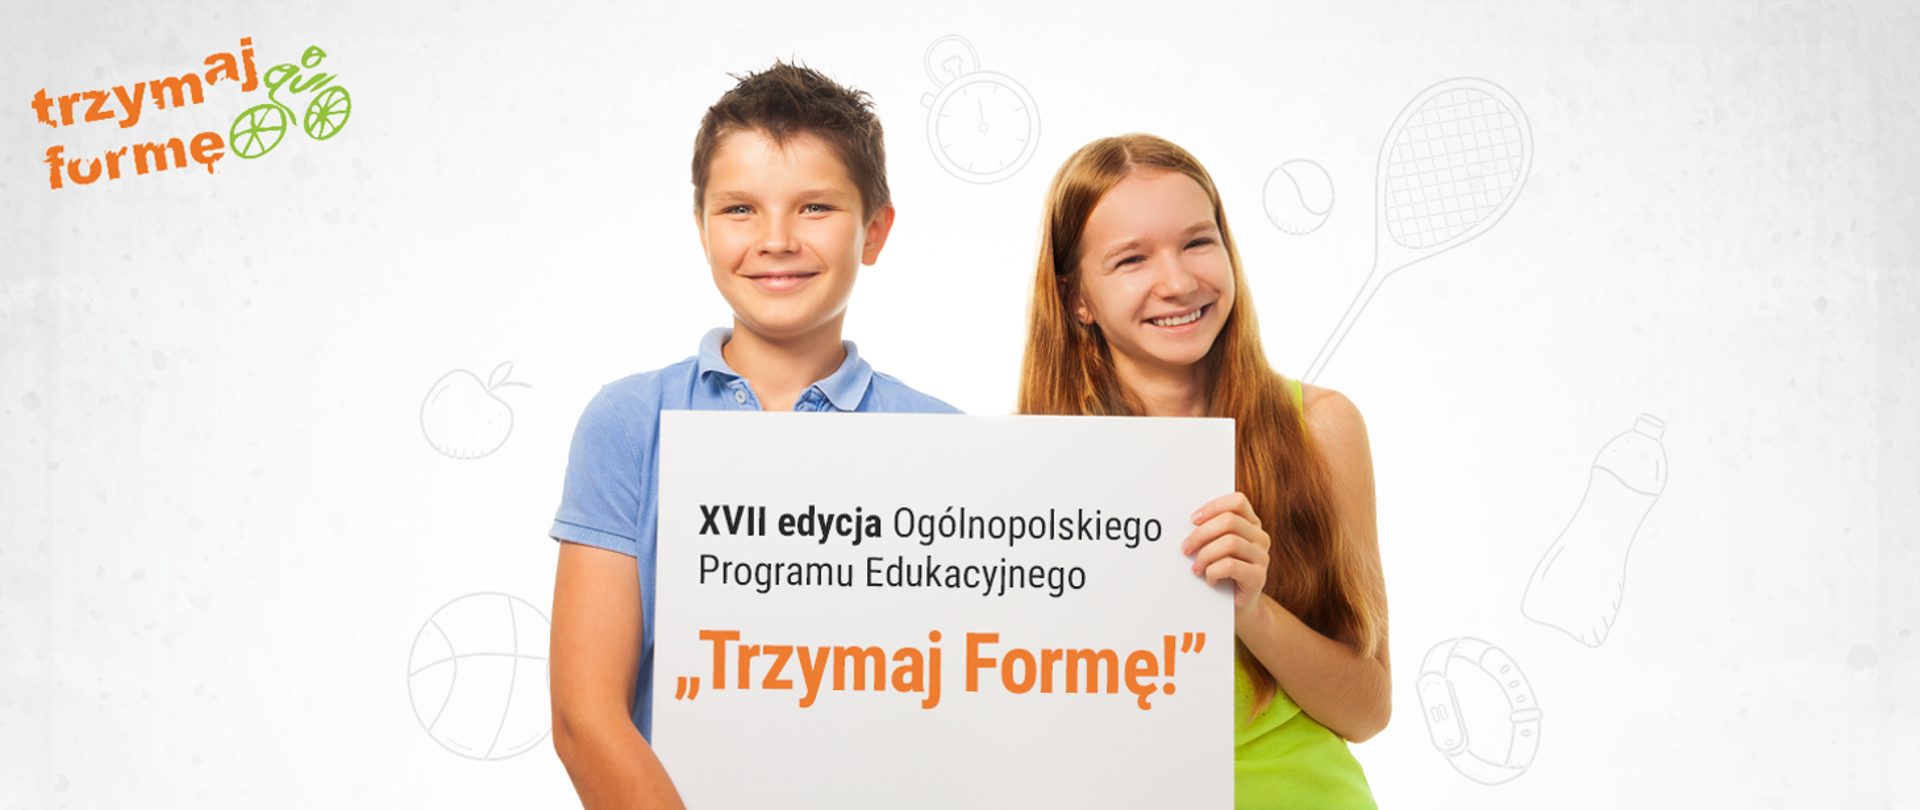 Ogólnopolski Program Edukacyjny „Trzymaj Formę!” po raz XVII - ruszyła rejestracja szkół do kolejnej edycji programu